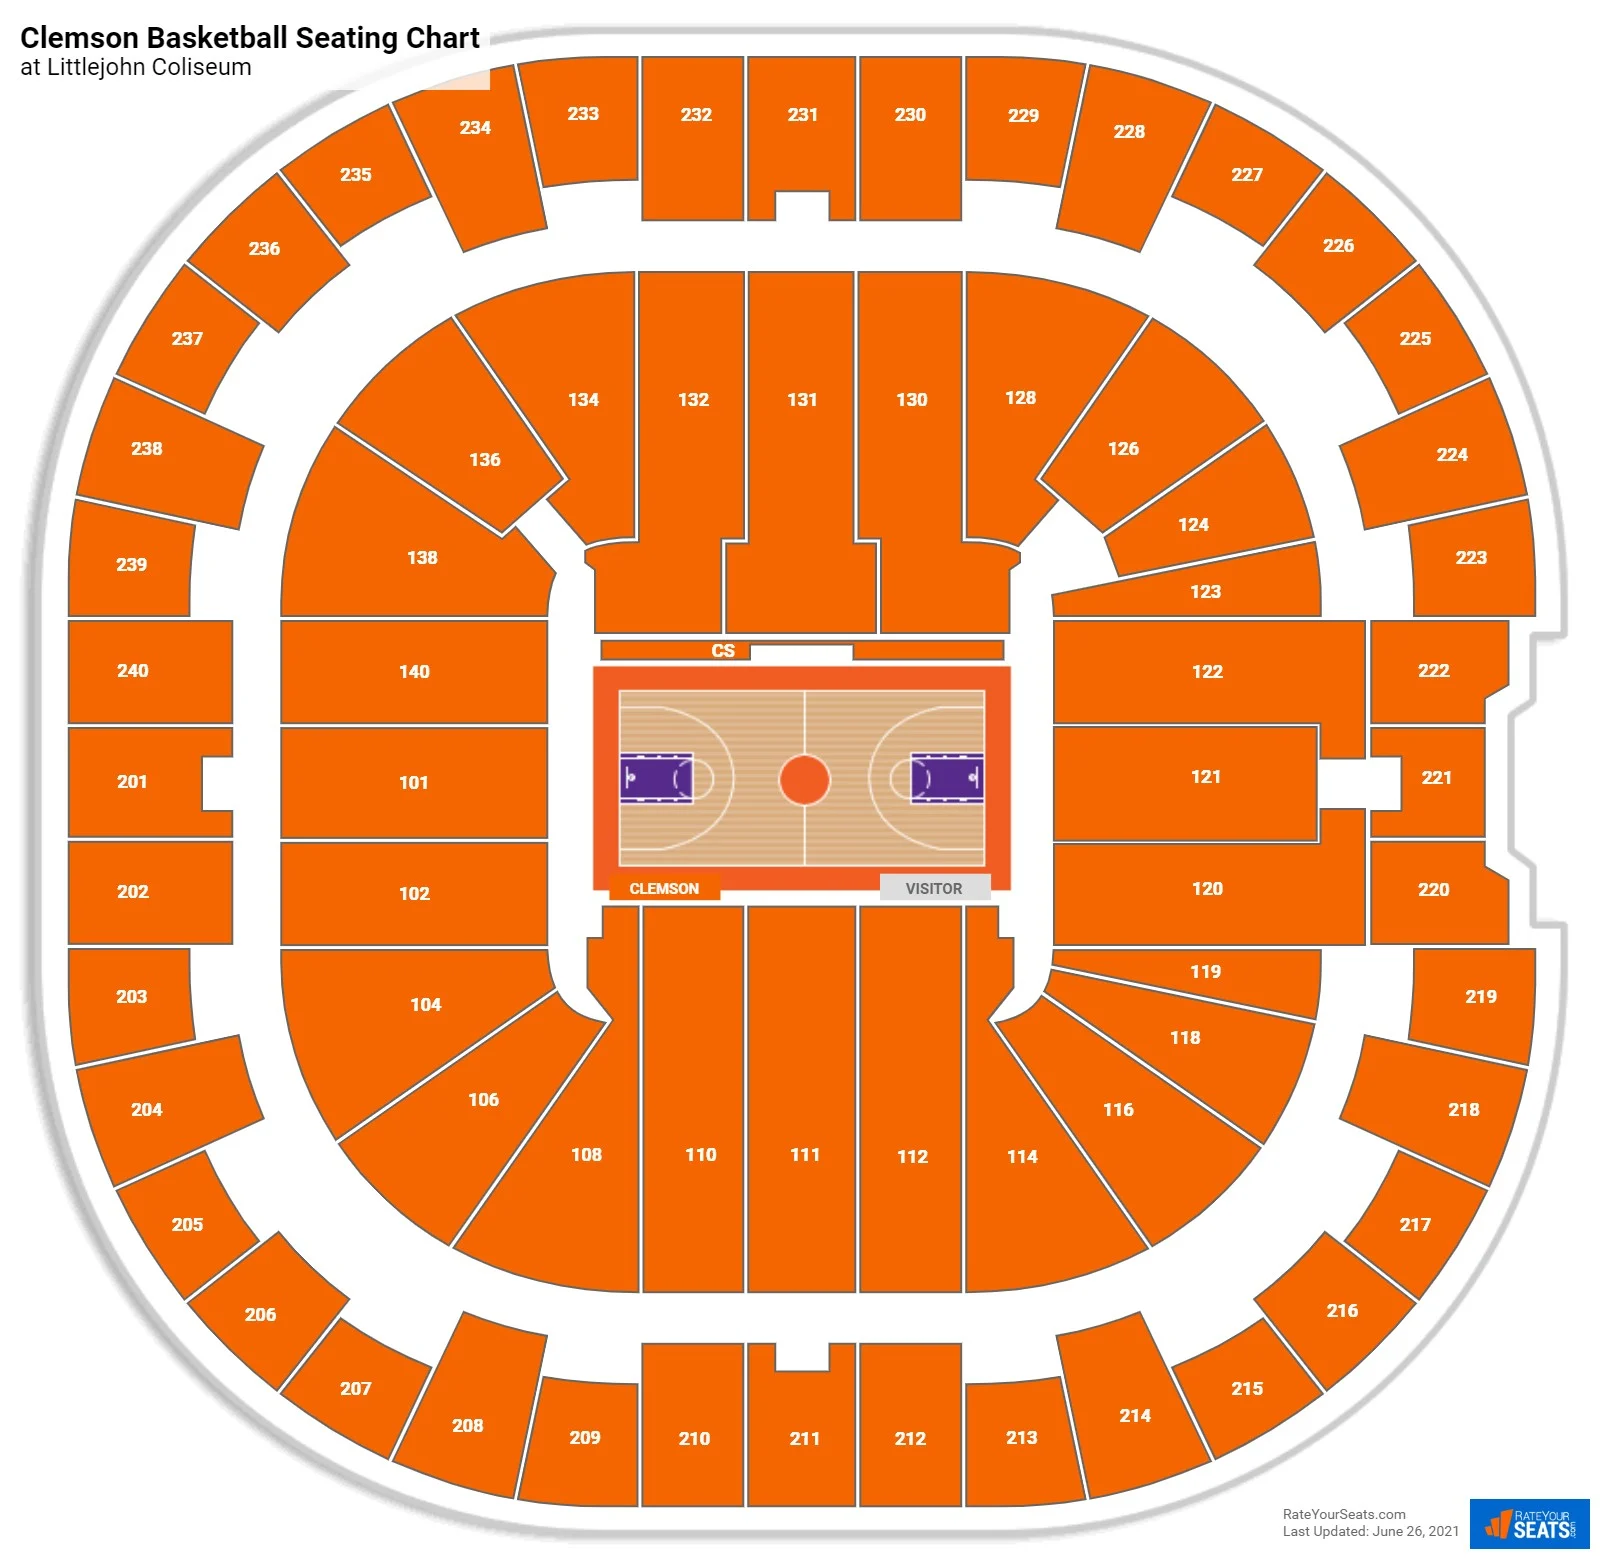 Littlejohn Coliseum Seating Chart - Clemson, SC